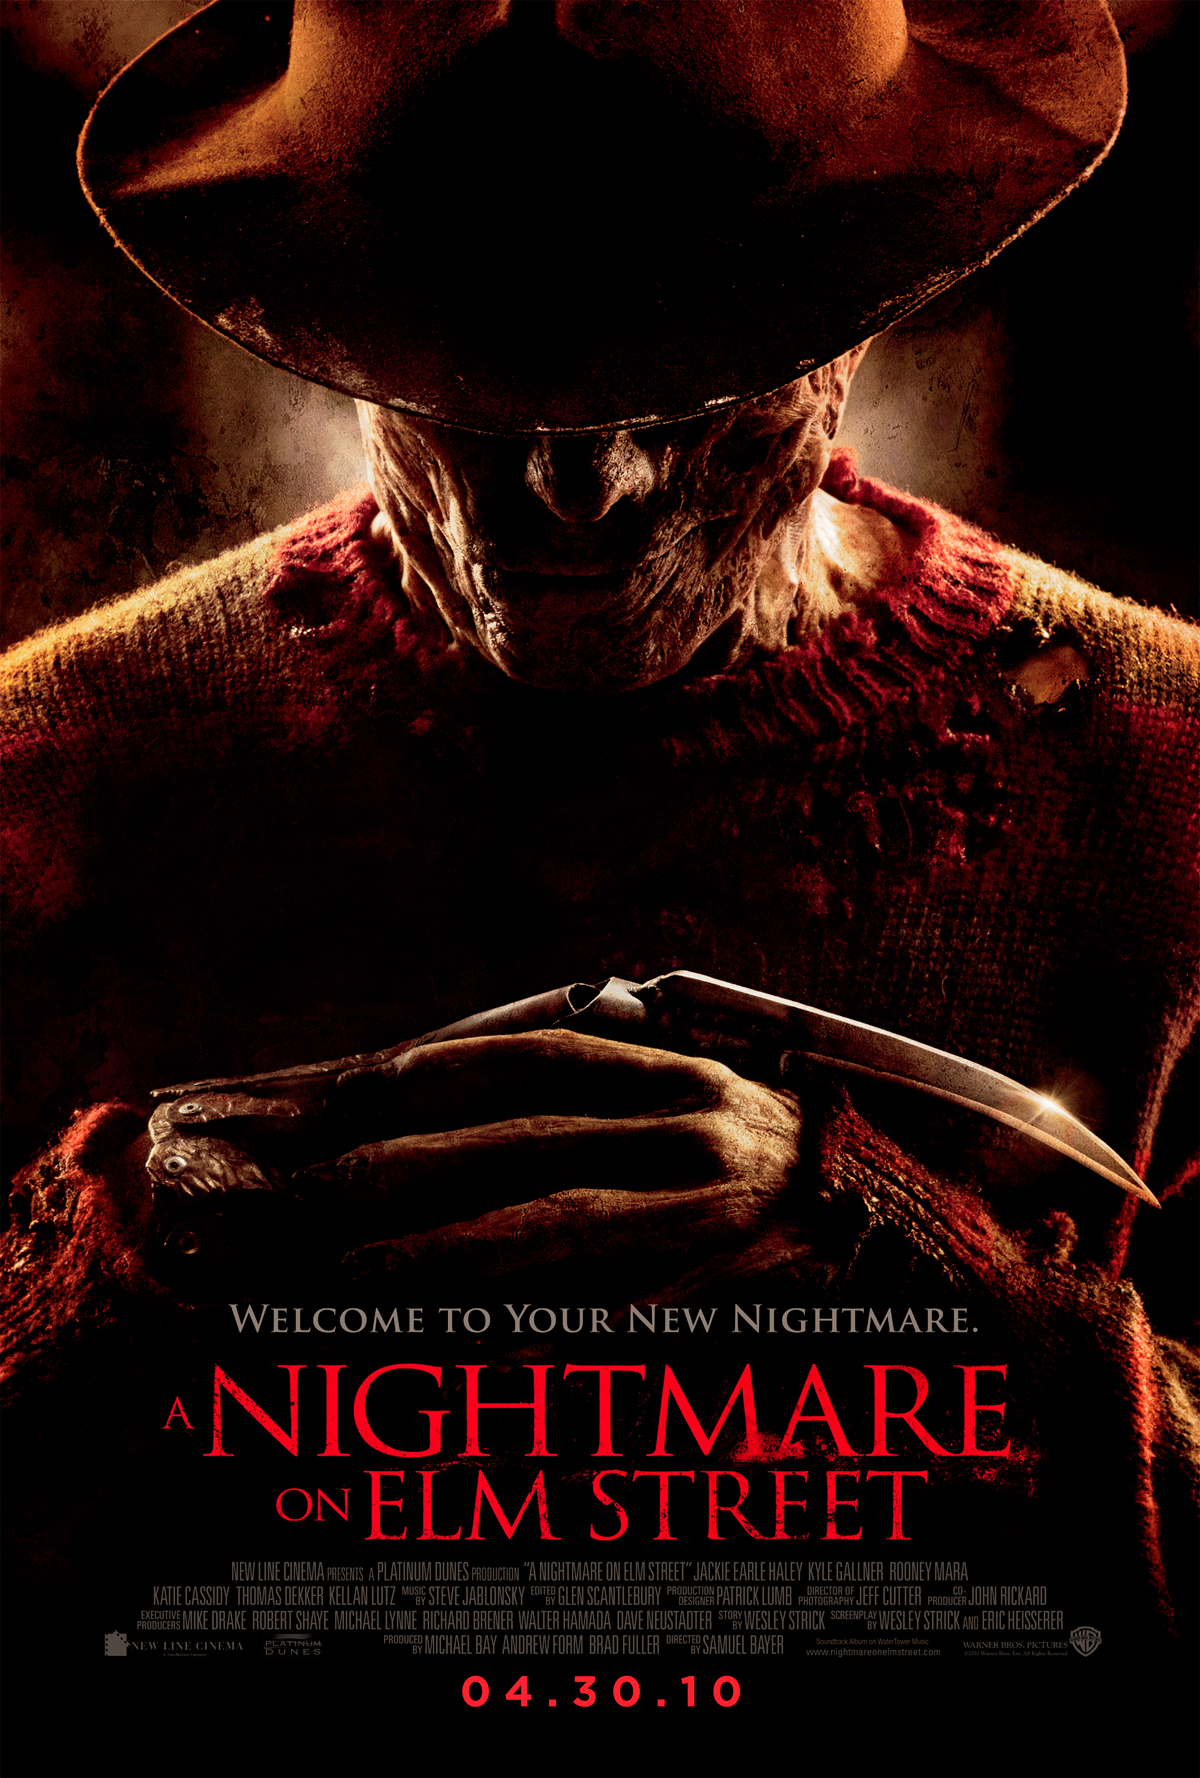 GalleryA Nightmare on Elm Street (2010 film) posters Elm Street Wiki